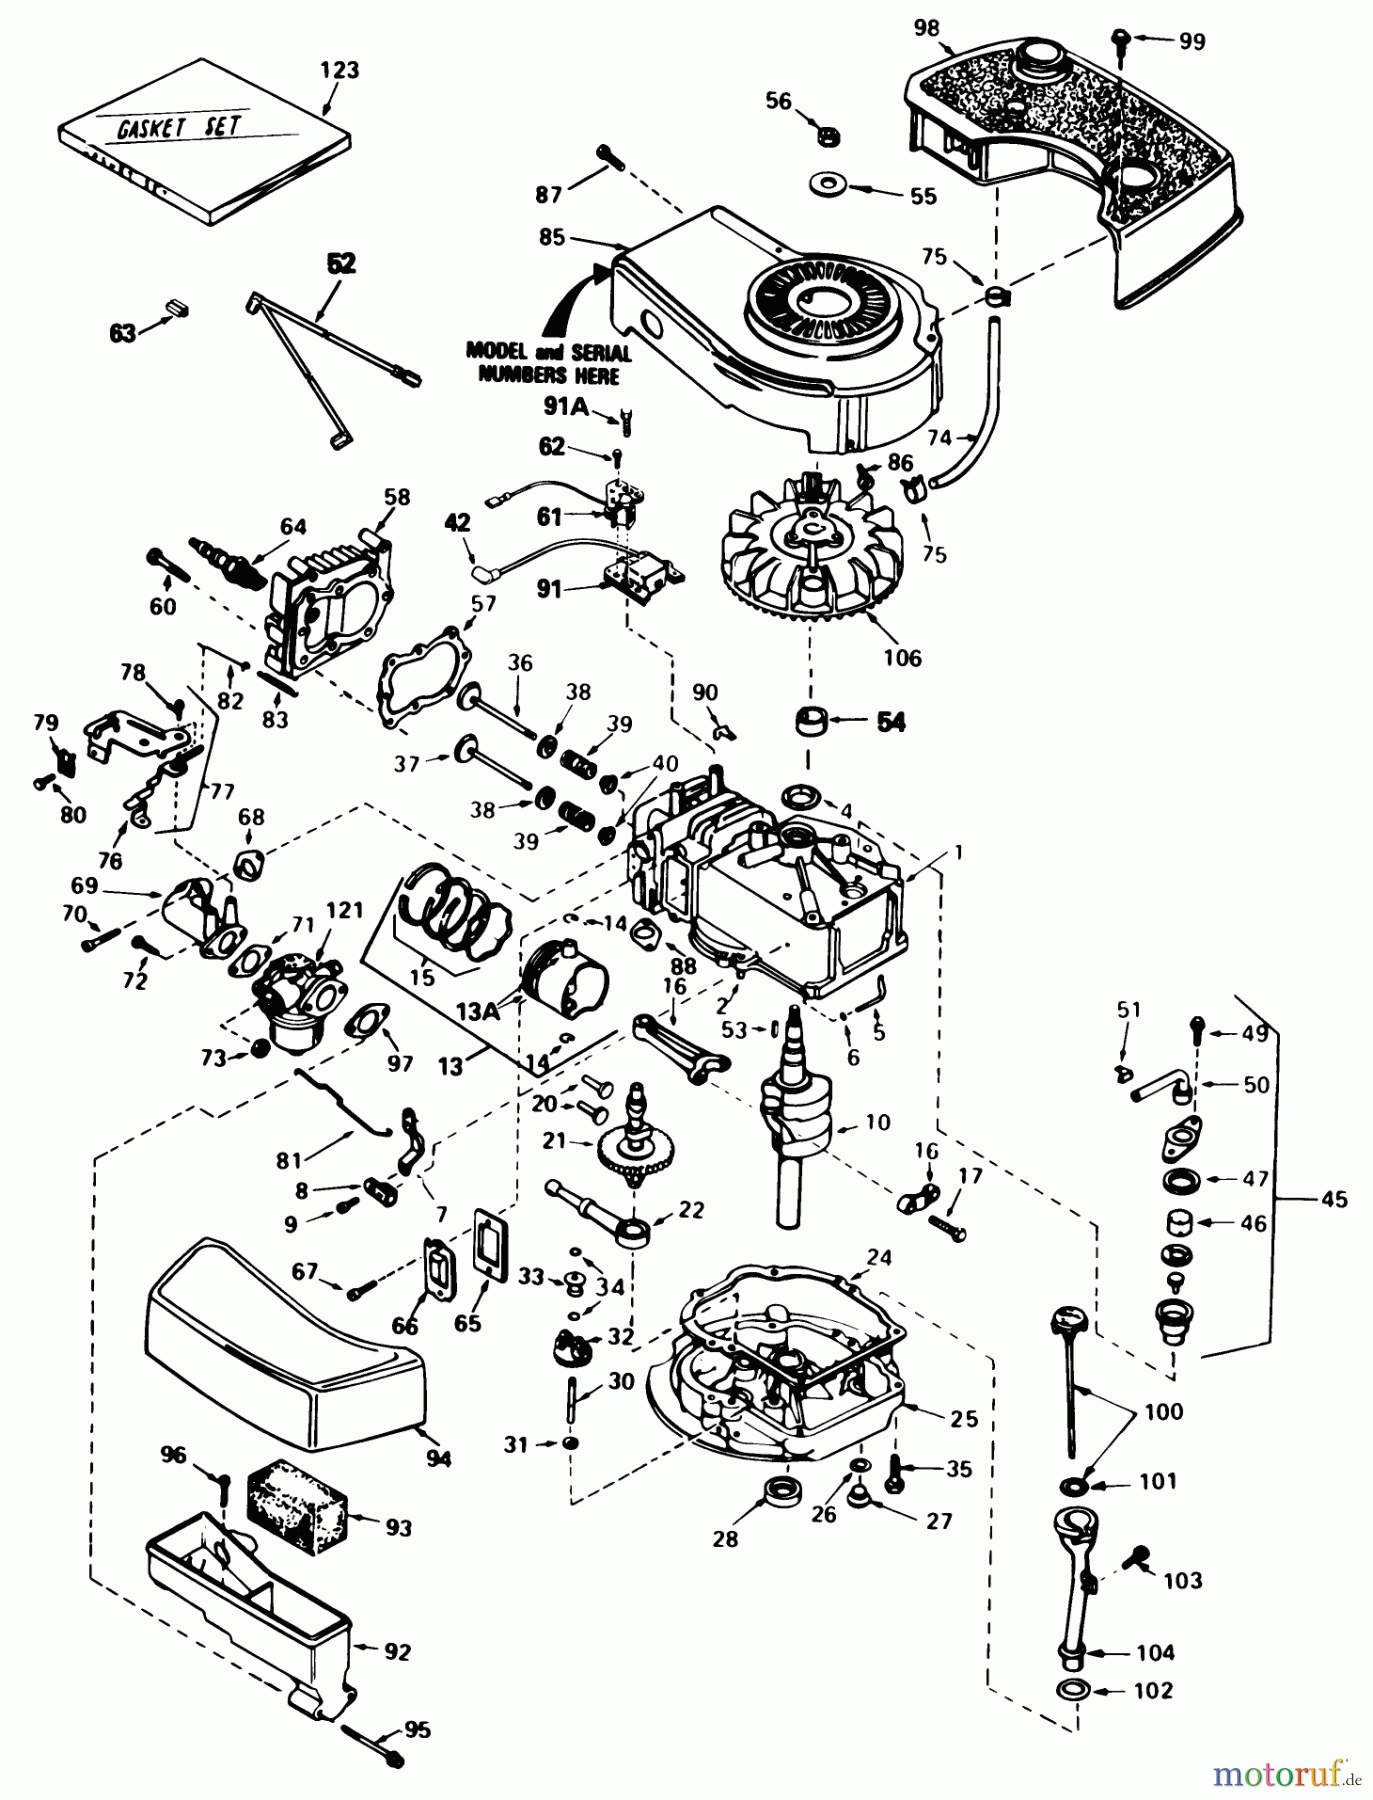  Toro Neu Mowers, Walk-Behind Seite 1 20574 - Toro Lawnmower, 1984 (4000001-4999999) ENGINE TECUMSEH MODEL NO. TNT 100-10084E